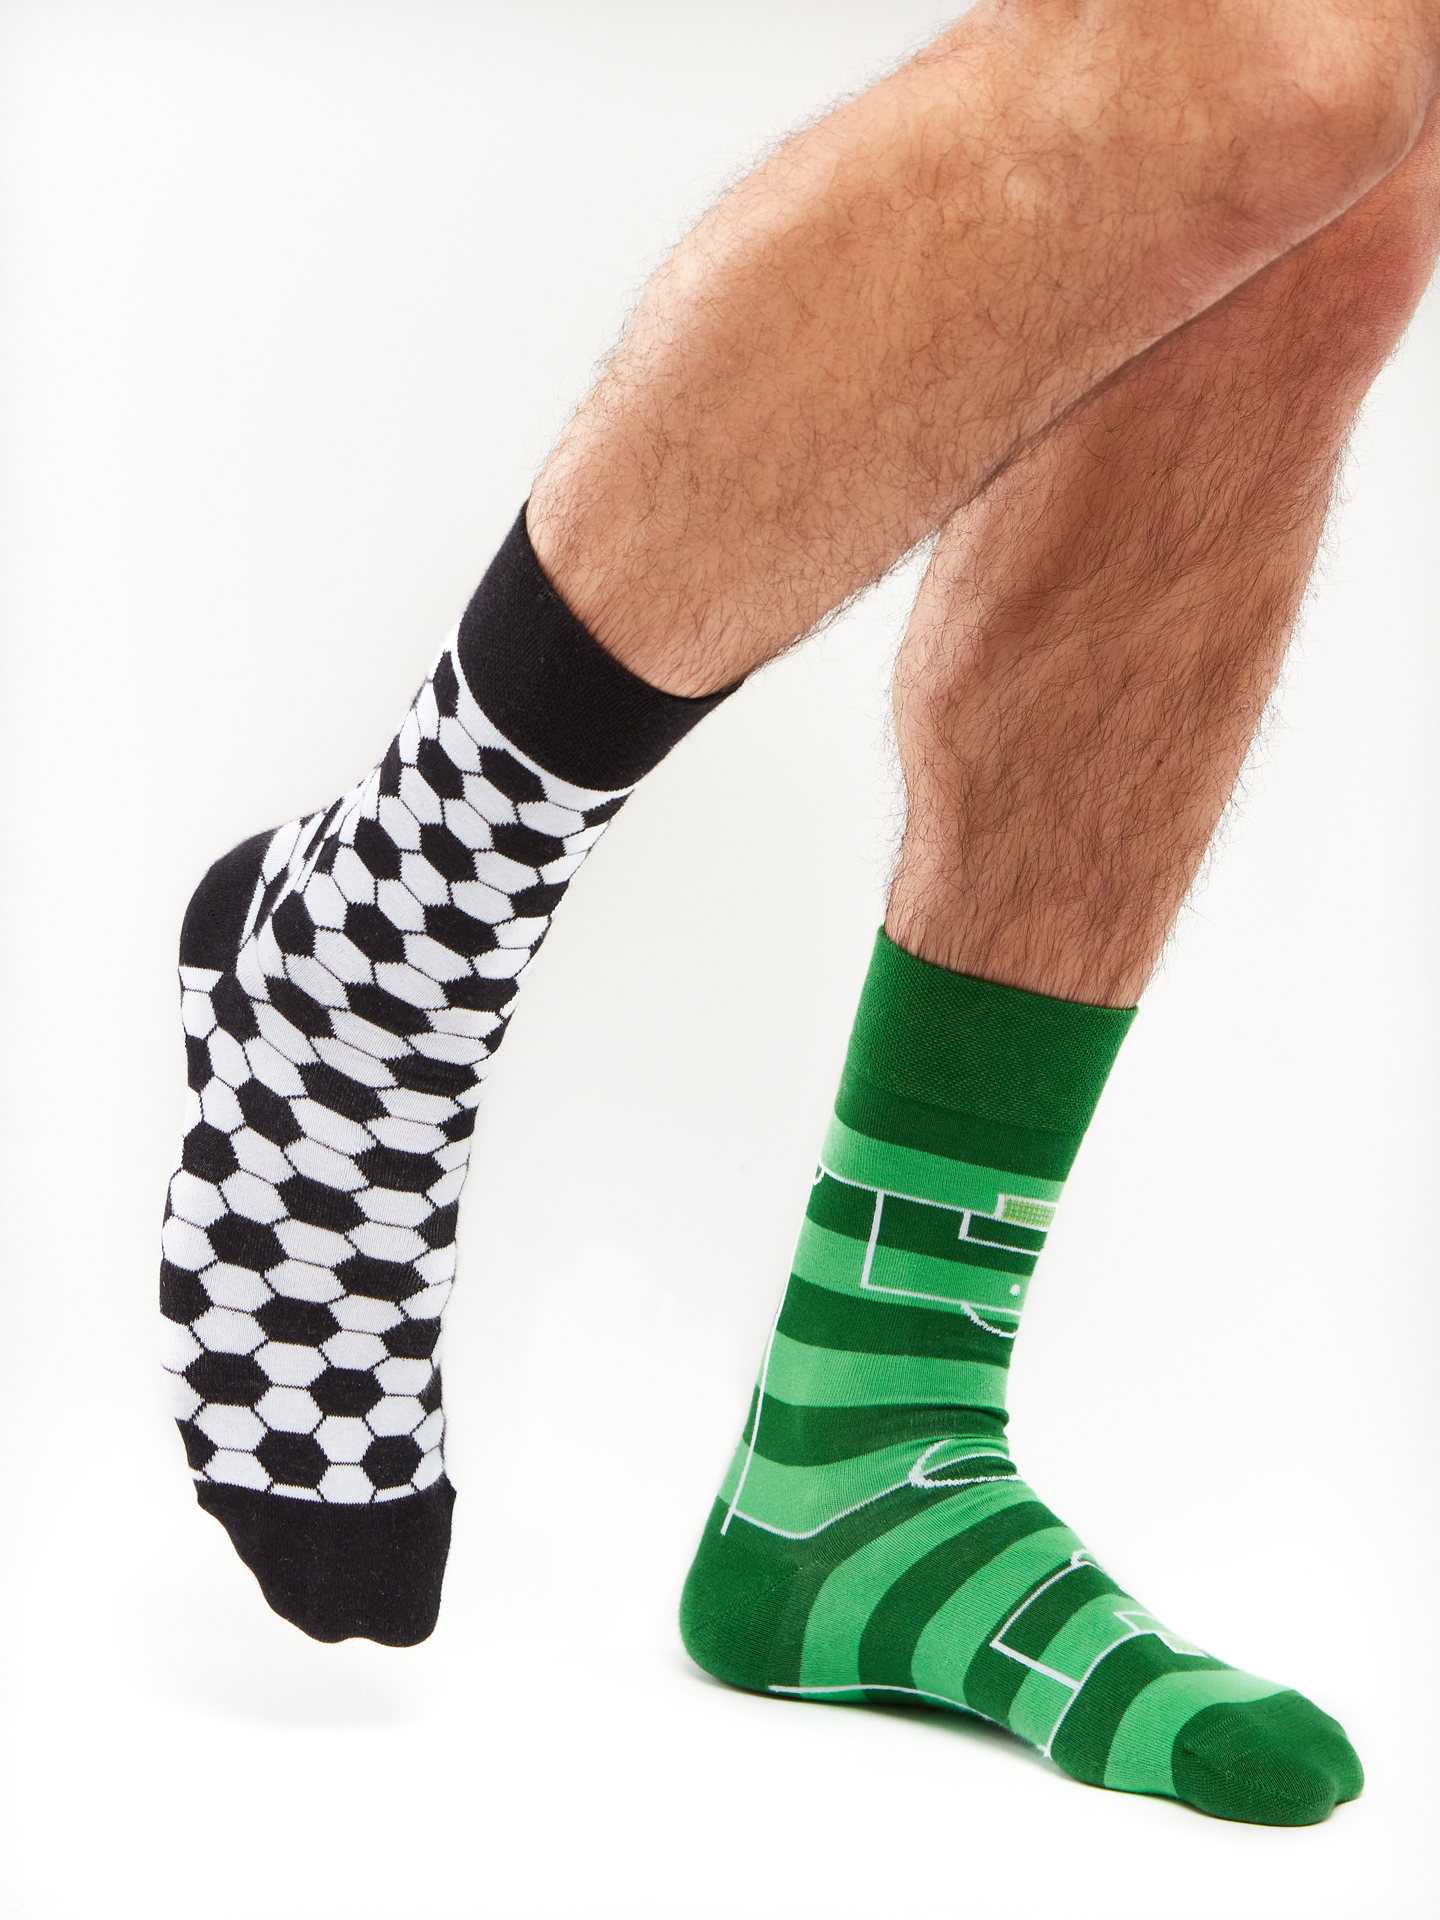 Nageslacht Schotel Portret Vrolijke sokken Voetbal | Dedoles